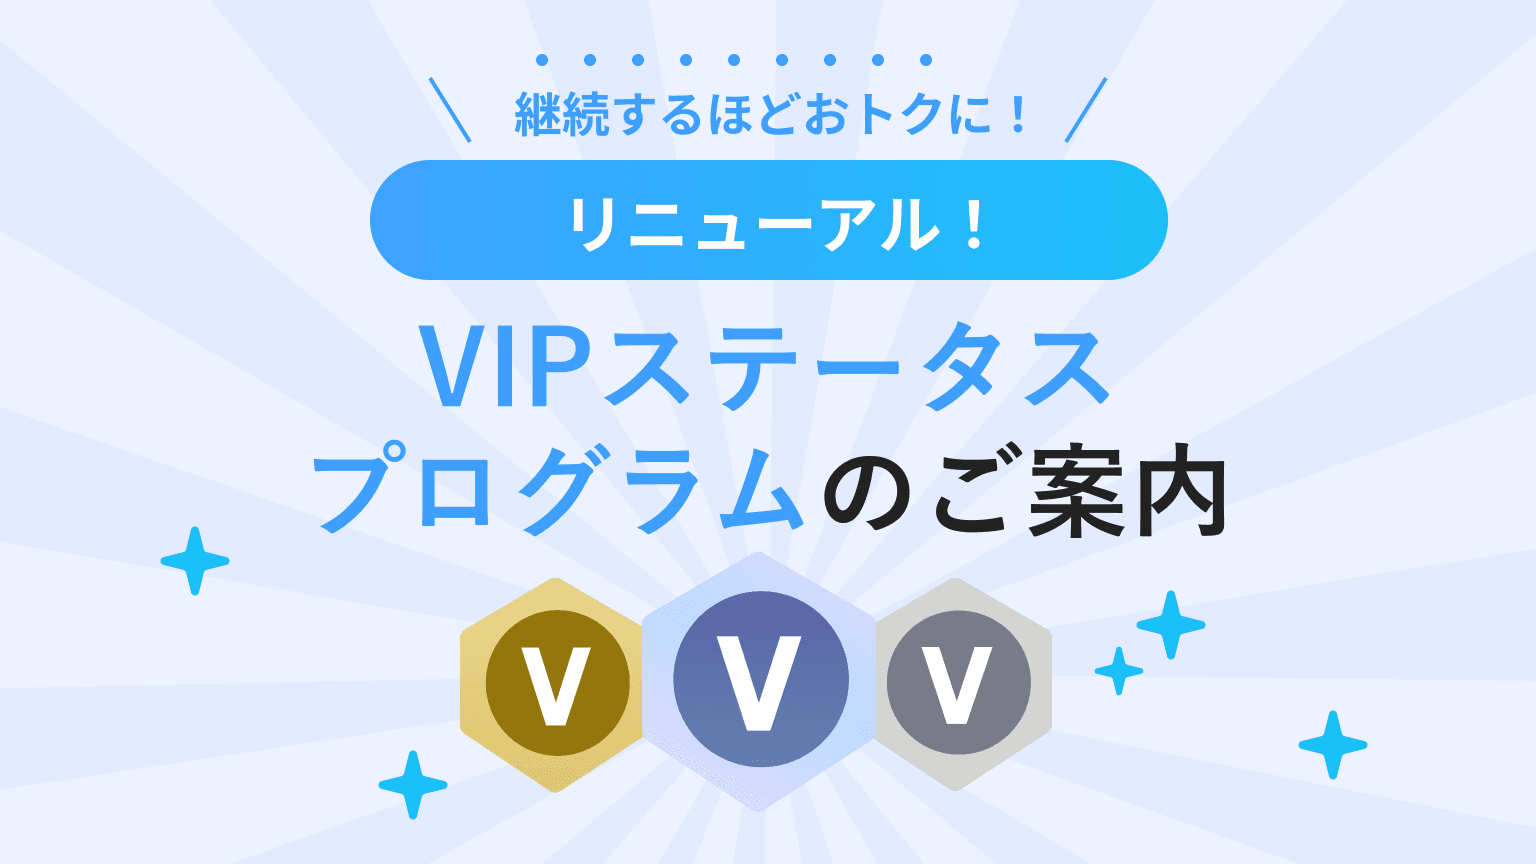 【7/18開始】継続するほどオトクに! VIPステータスプログラム!